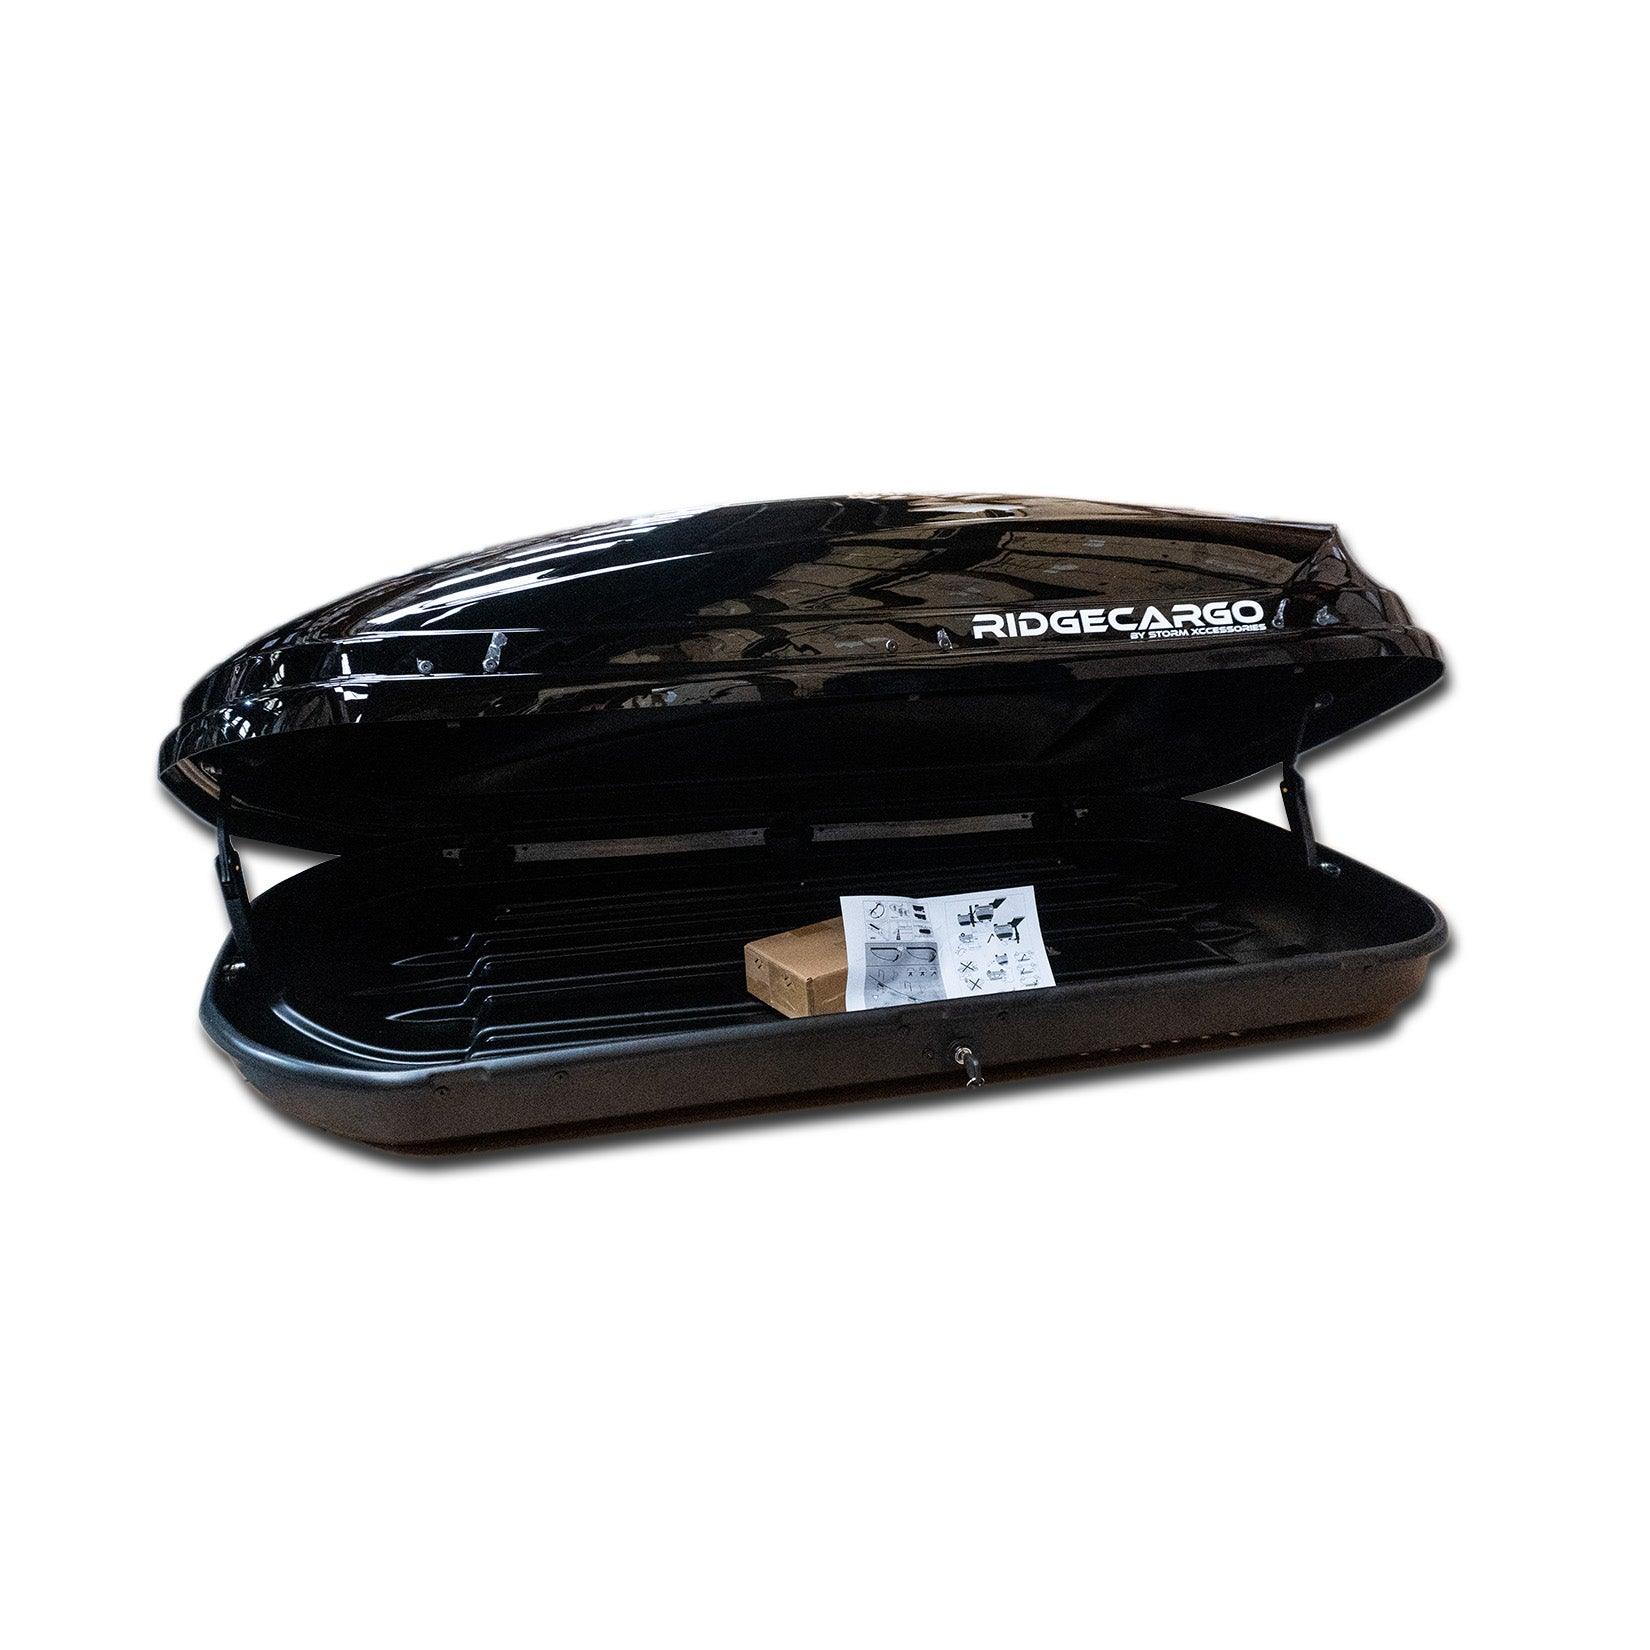 RIDGECARGO SERIES 550L ROOF BOX IN BLACK - 1730 X 430 X 800CM - Storm Xccessories